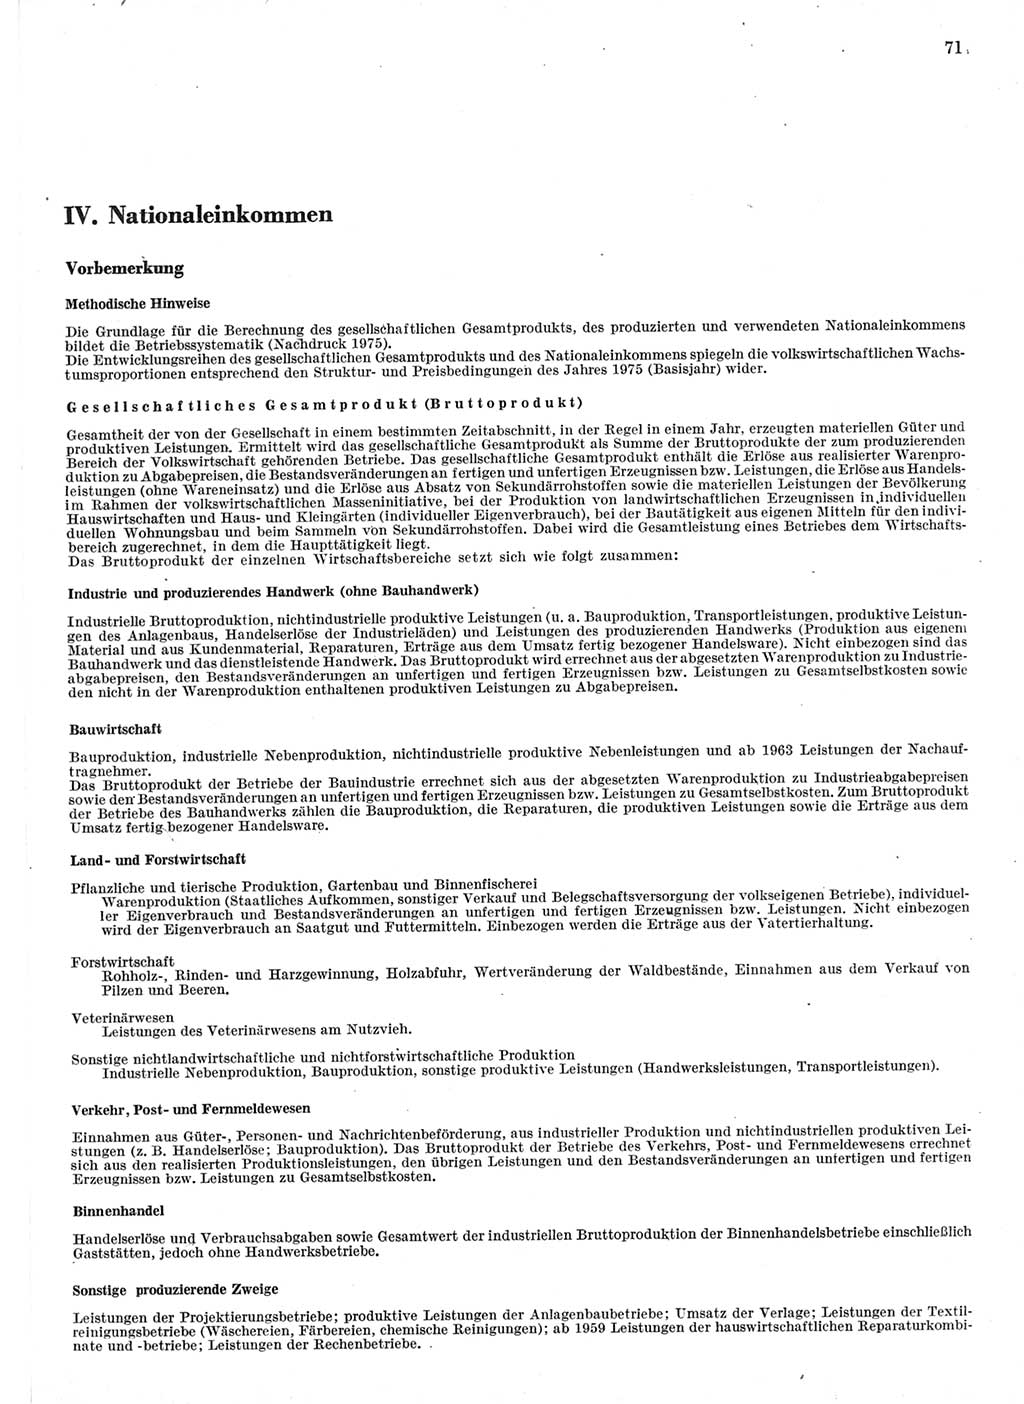 Statistisches Jahrbuch der Deutschen Demokratischen Republik (DDR) 1978, Seite 71 (Stat. Jb. DDR 1978, S. 71)